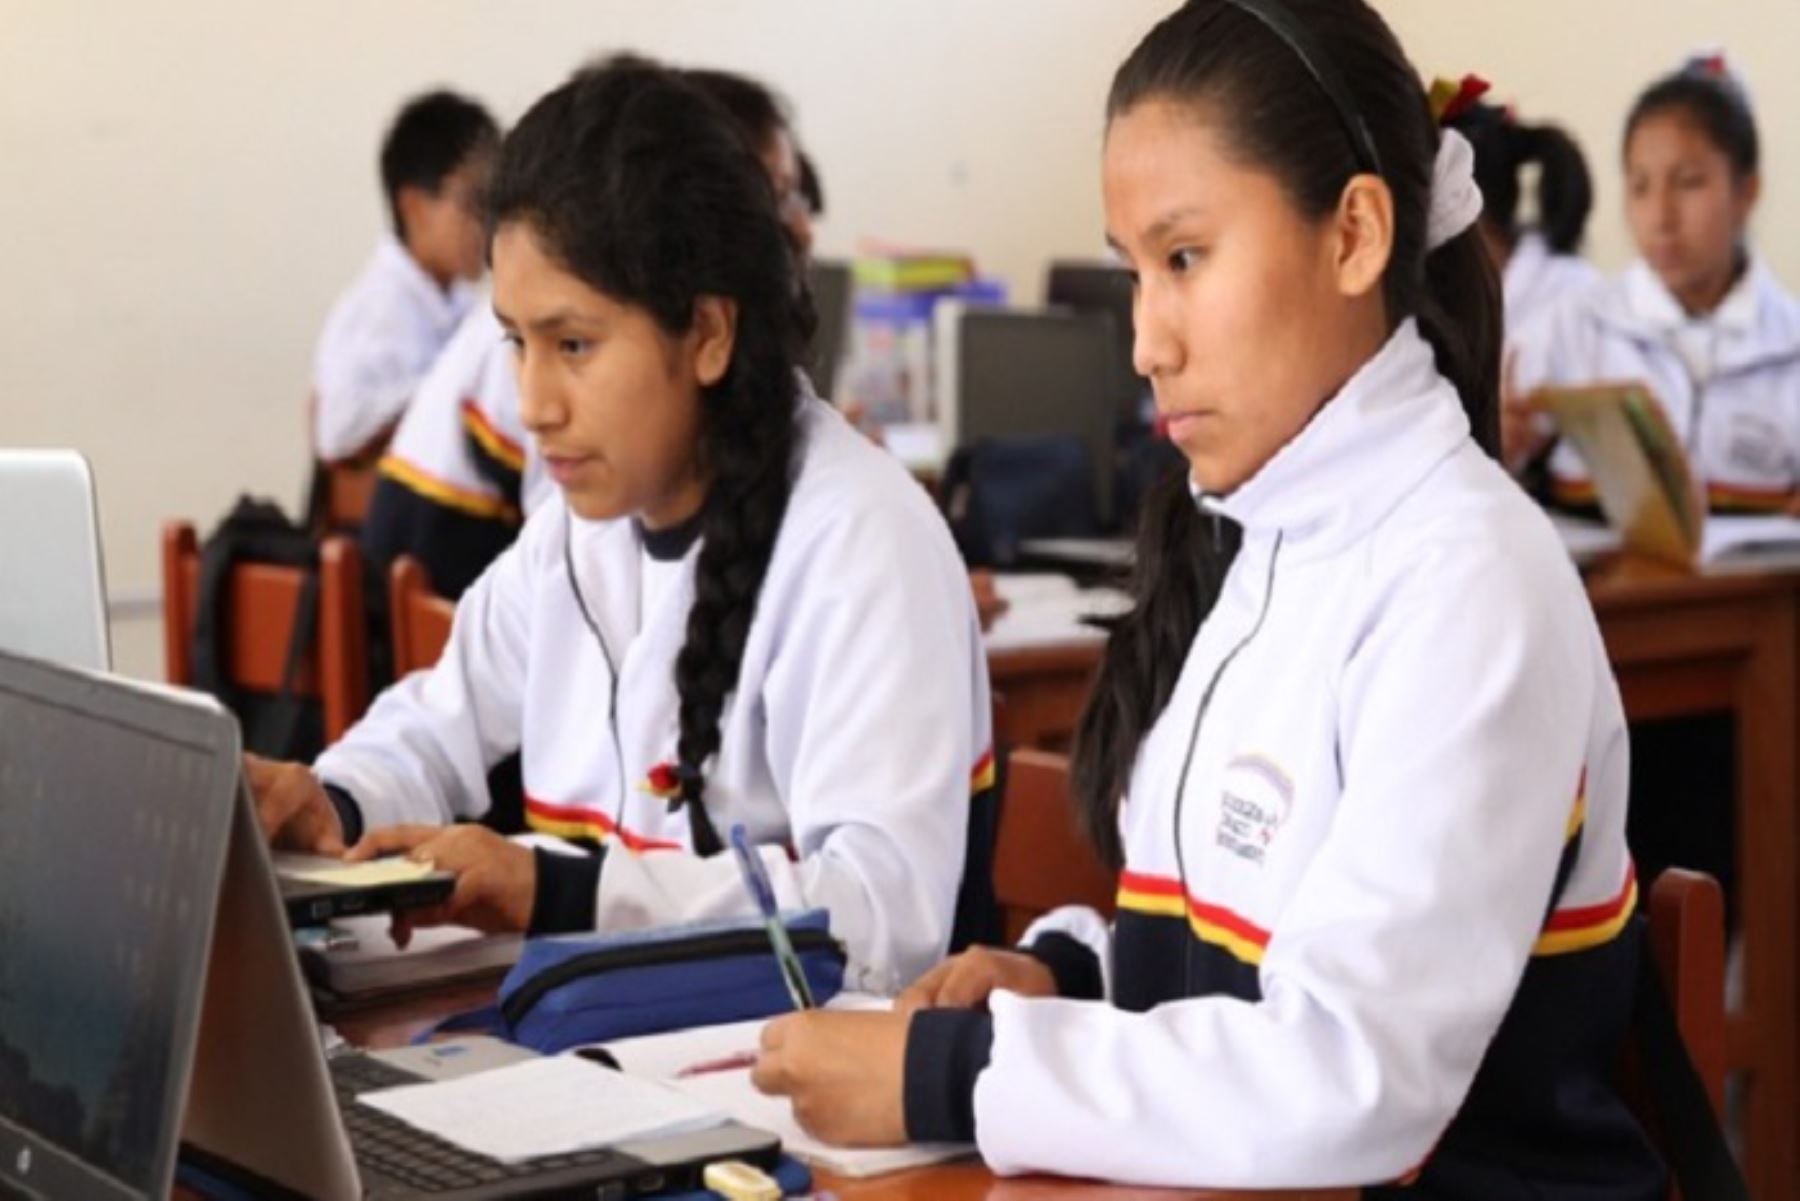 Las clases escolares en Puno siguen planificadas para iniciarse el próximo 13 de marzo, puntualizó el ministro de Educación, Oscar Becerra.